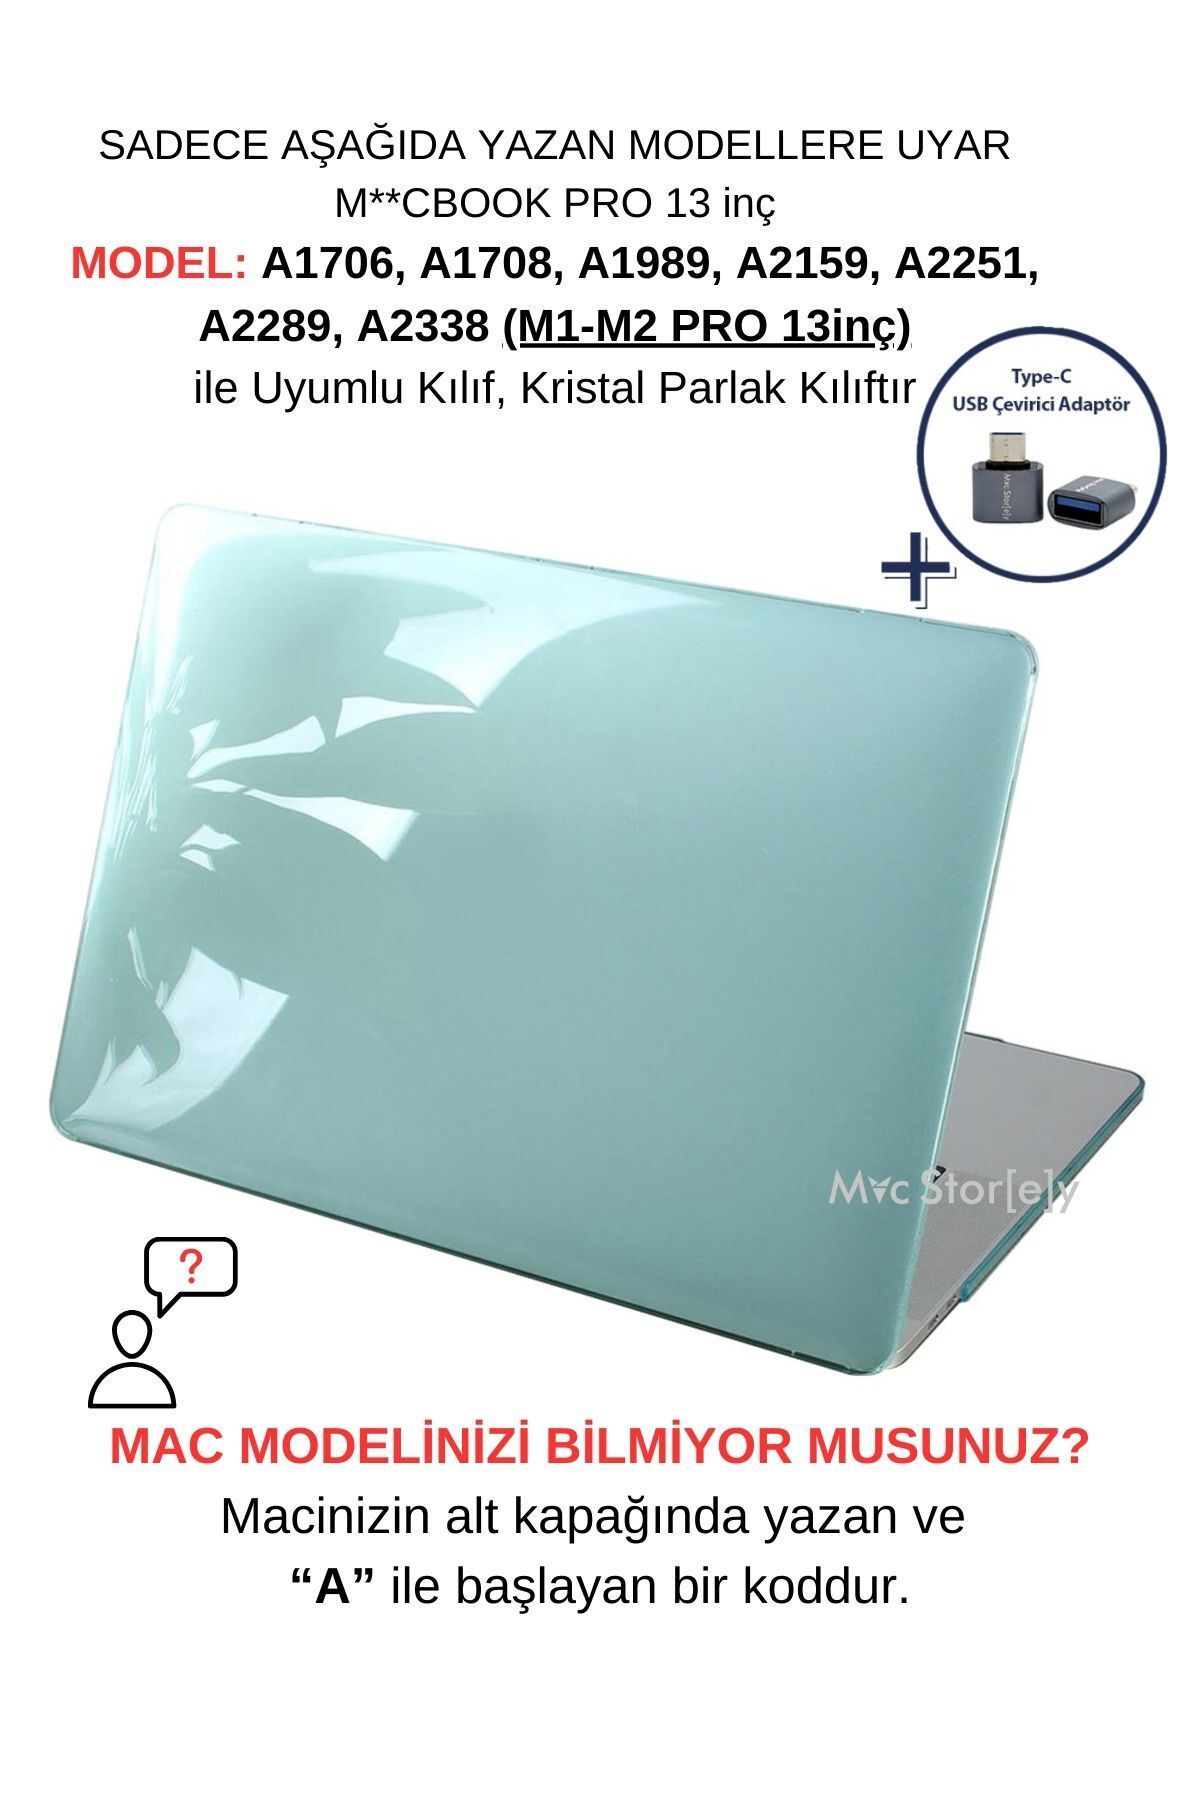 Mcstorey Macbook Pro Kılıf 13 Inç M1-m2 A1706 A1708 A1989 A2159 A2251 A2289 A2338 Ile Uyumlu Kristal